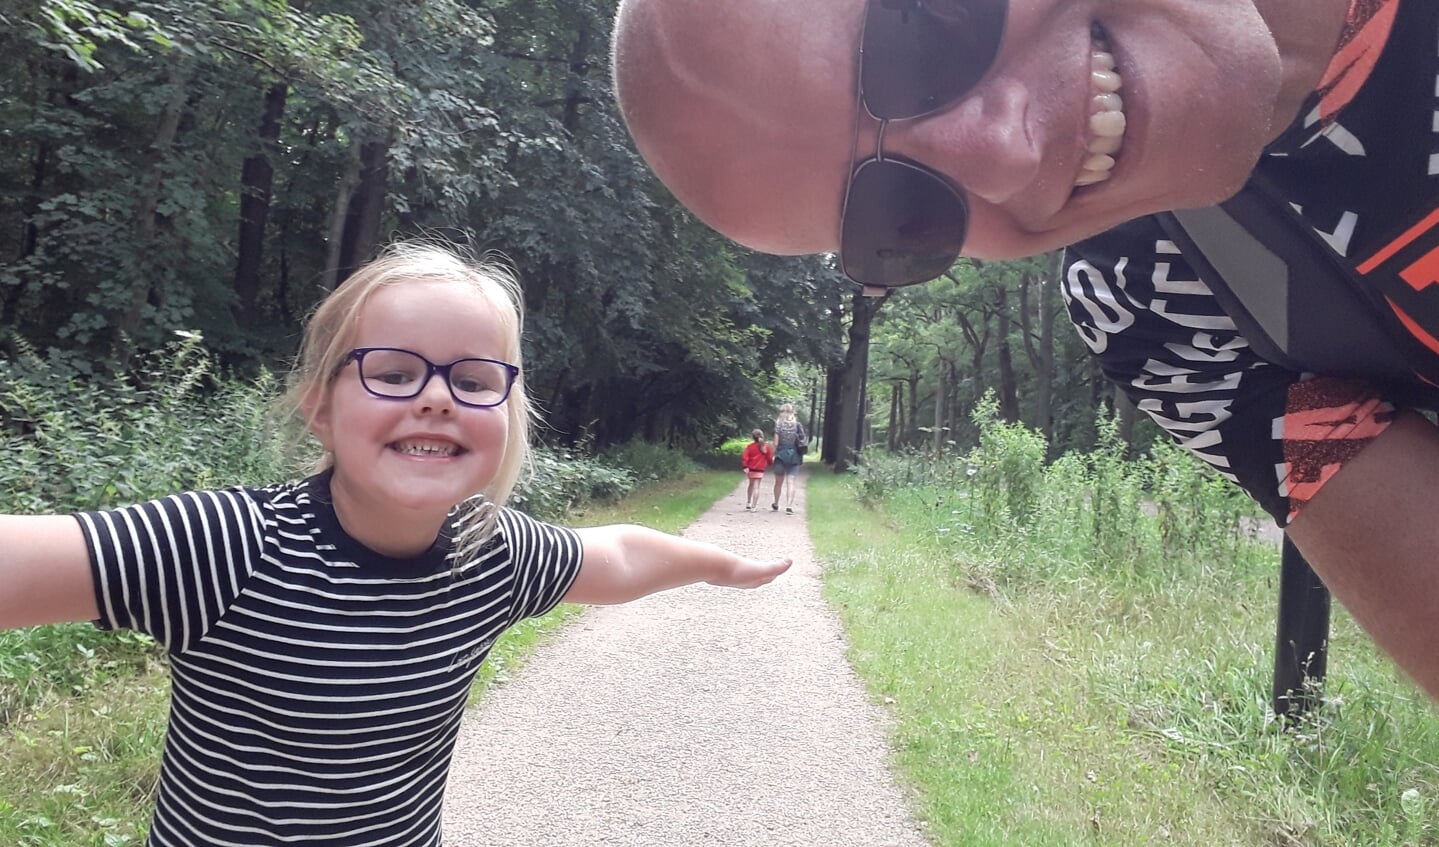 ,,De foto is gemaakt op 29 juli 2020 tijdens onze vakantie in Brabant, in het bos in Eindhoven. Het is een selfie van ons gezin met vader Erwin en Sophie (6 jaar) op de voorgrond, Vera (8 jaar) en moeder Rinske op de achtergrond.